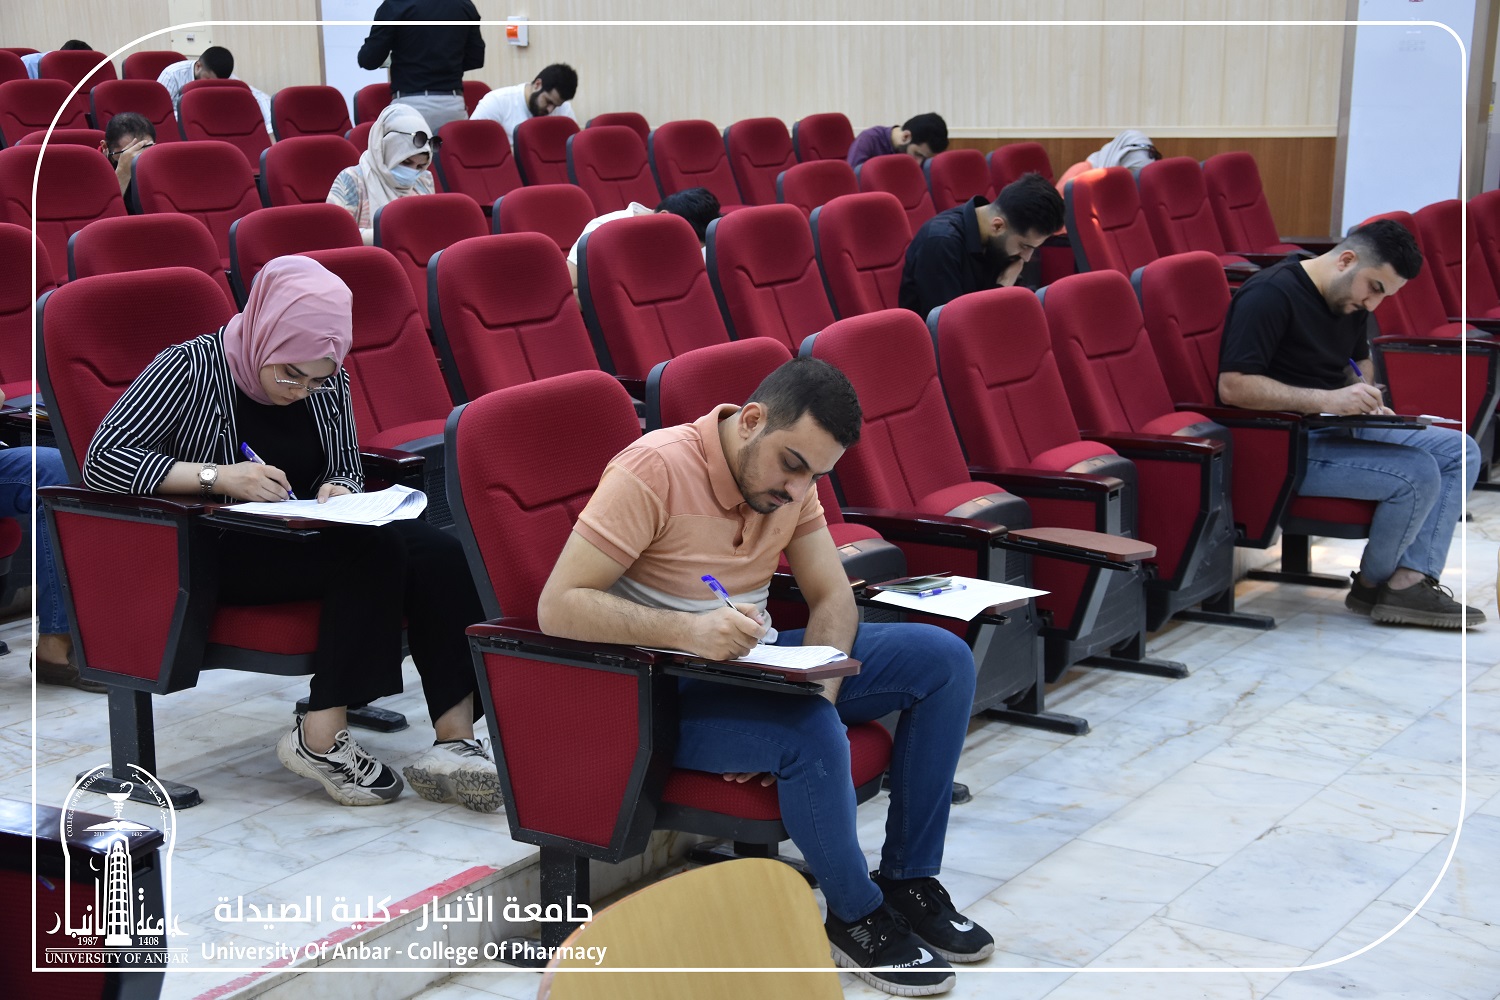  إنطلاق إمتحانات معادلة شهادة الصيدلة للطلبة الدارسين خارج العراق